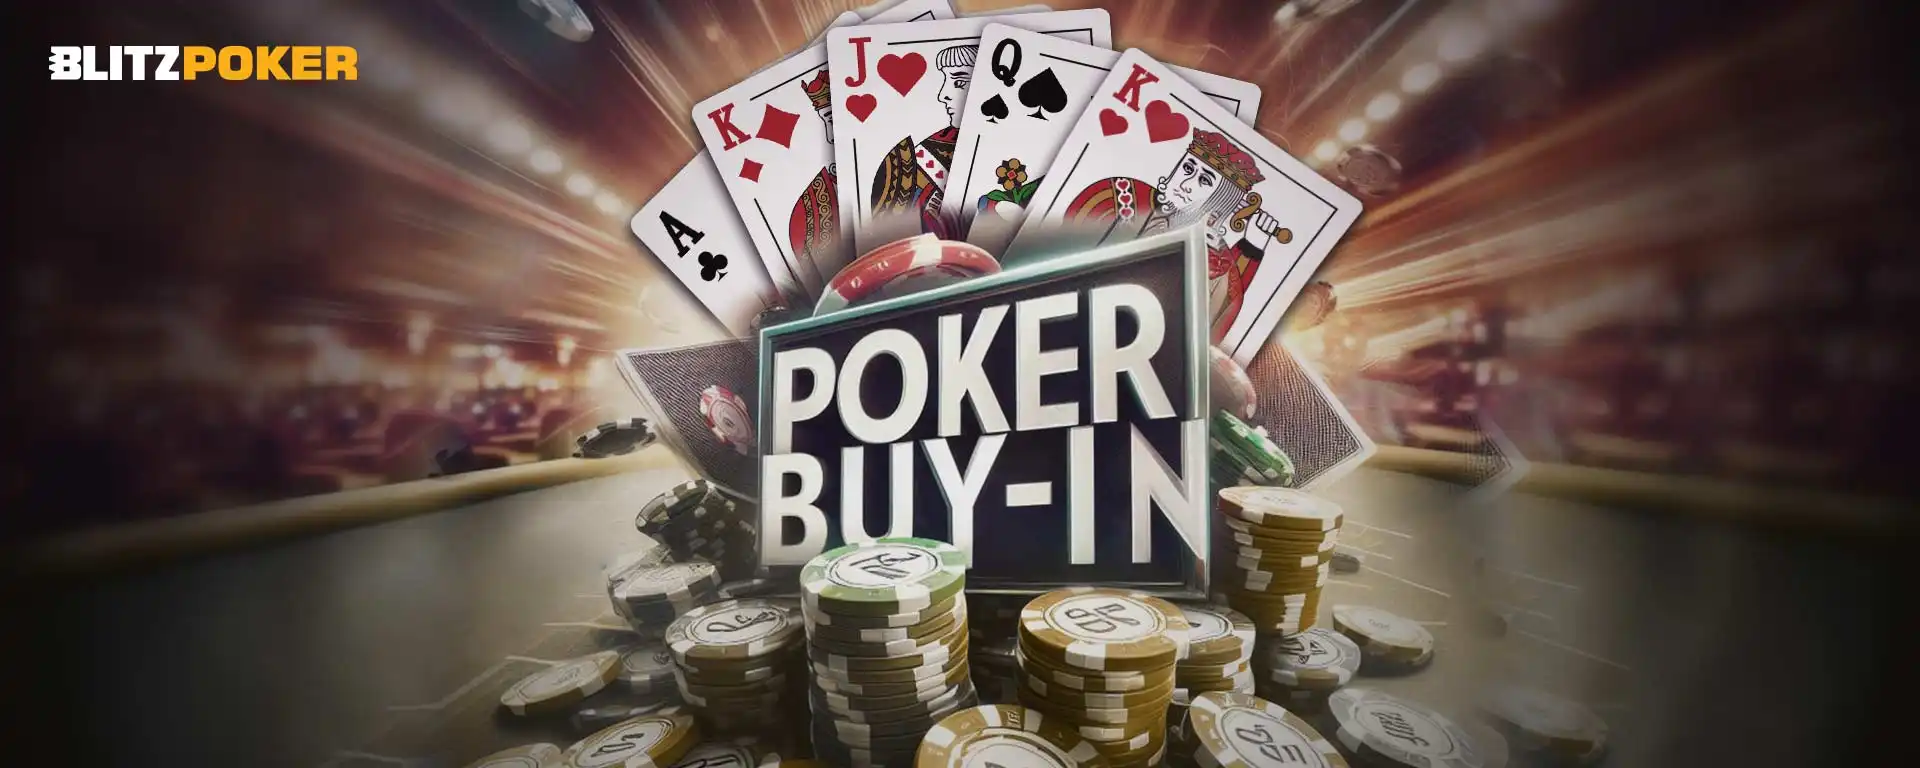 Buy-in For Poker